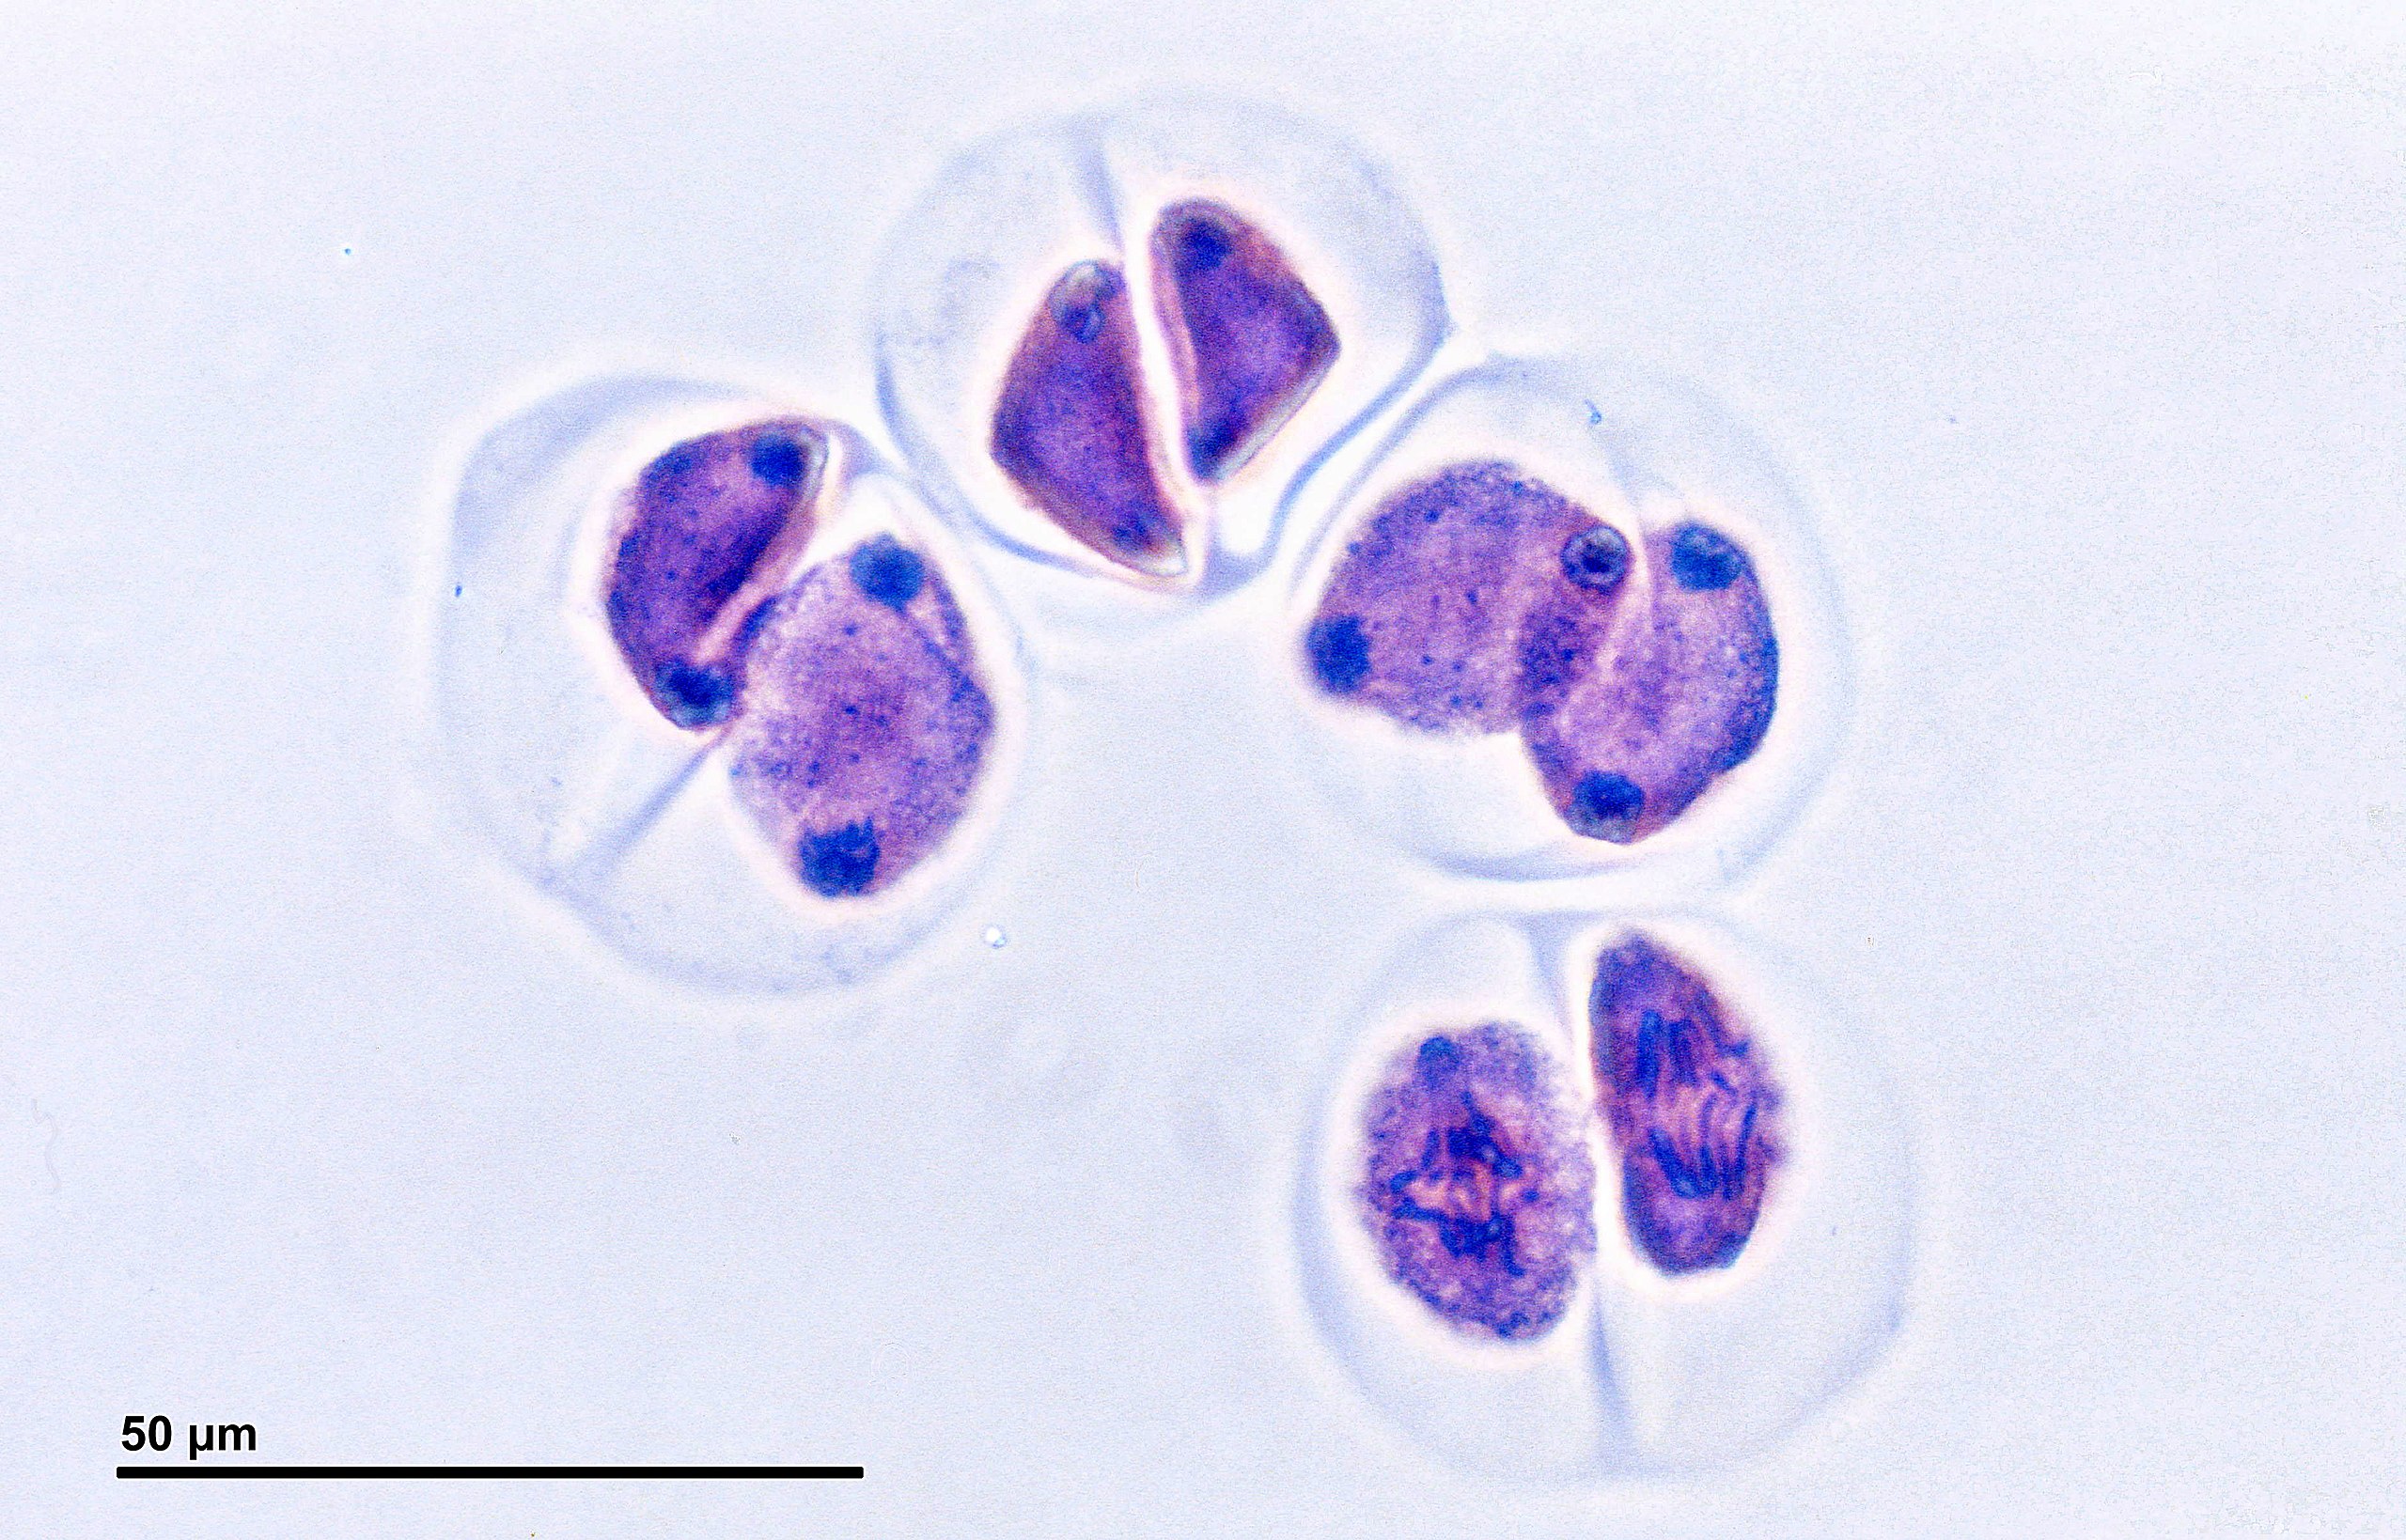 Cuatro celdas. Los tres superiores tienen cuatro regiones distintas donde los cromosomas se han agrupado.